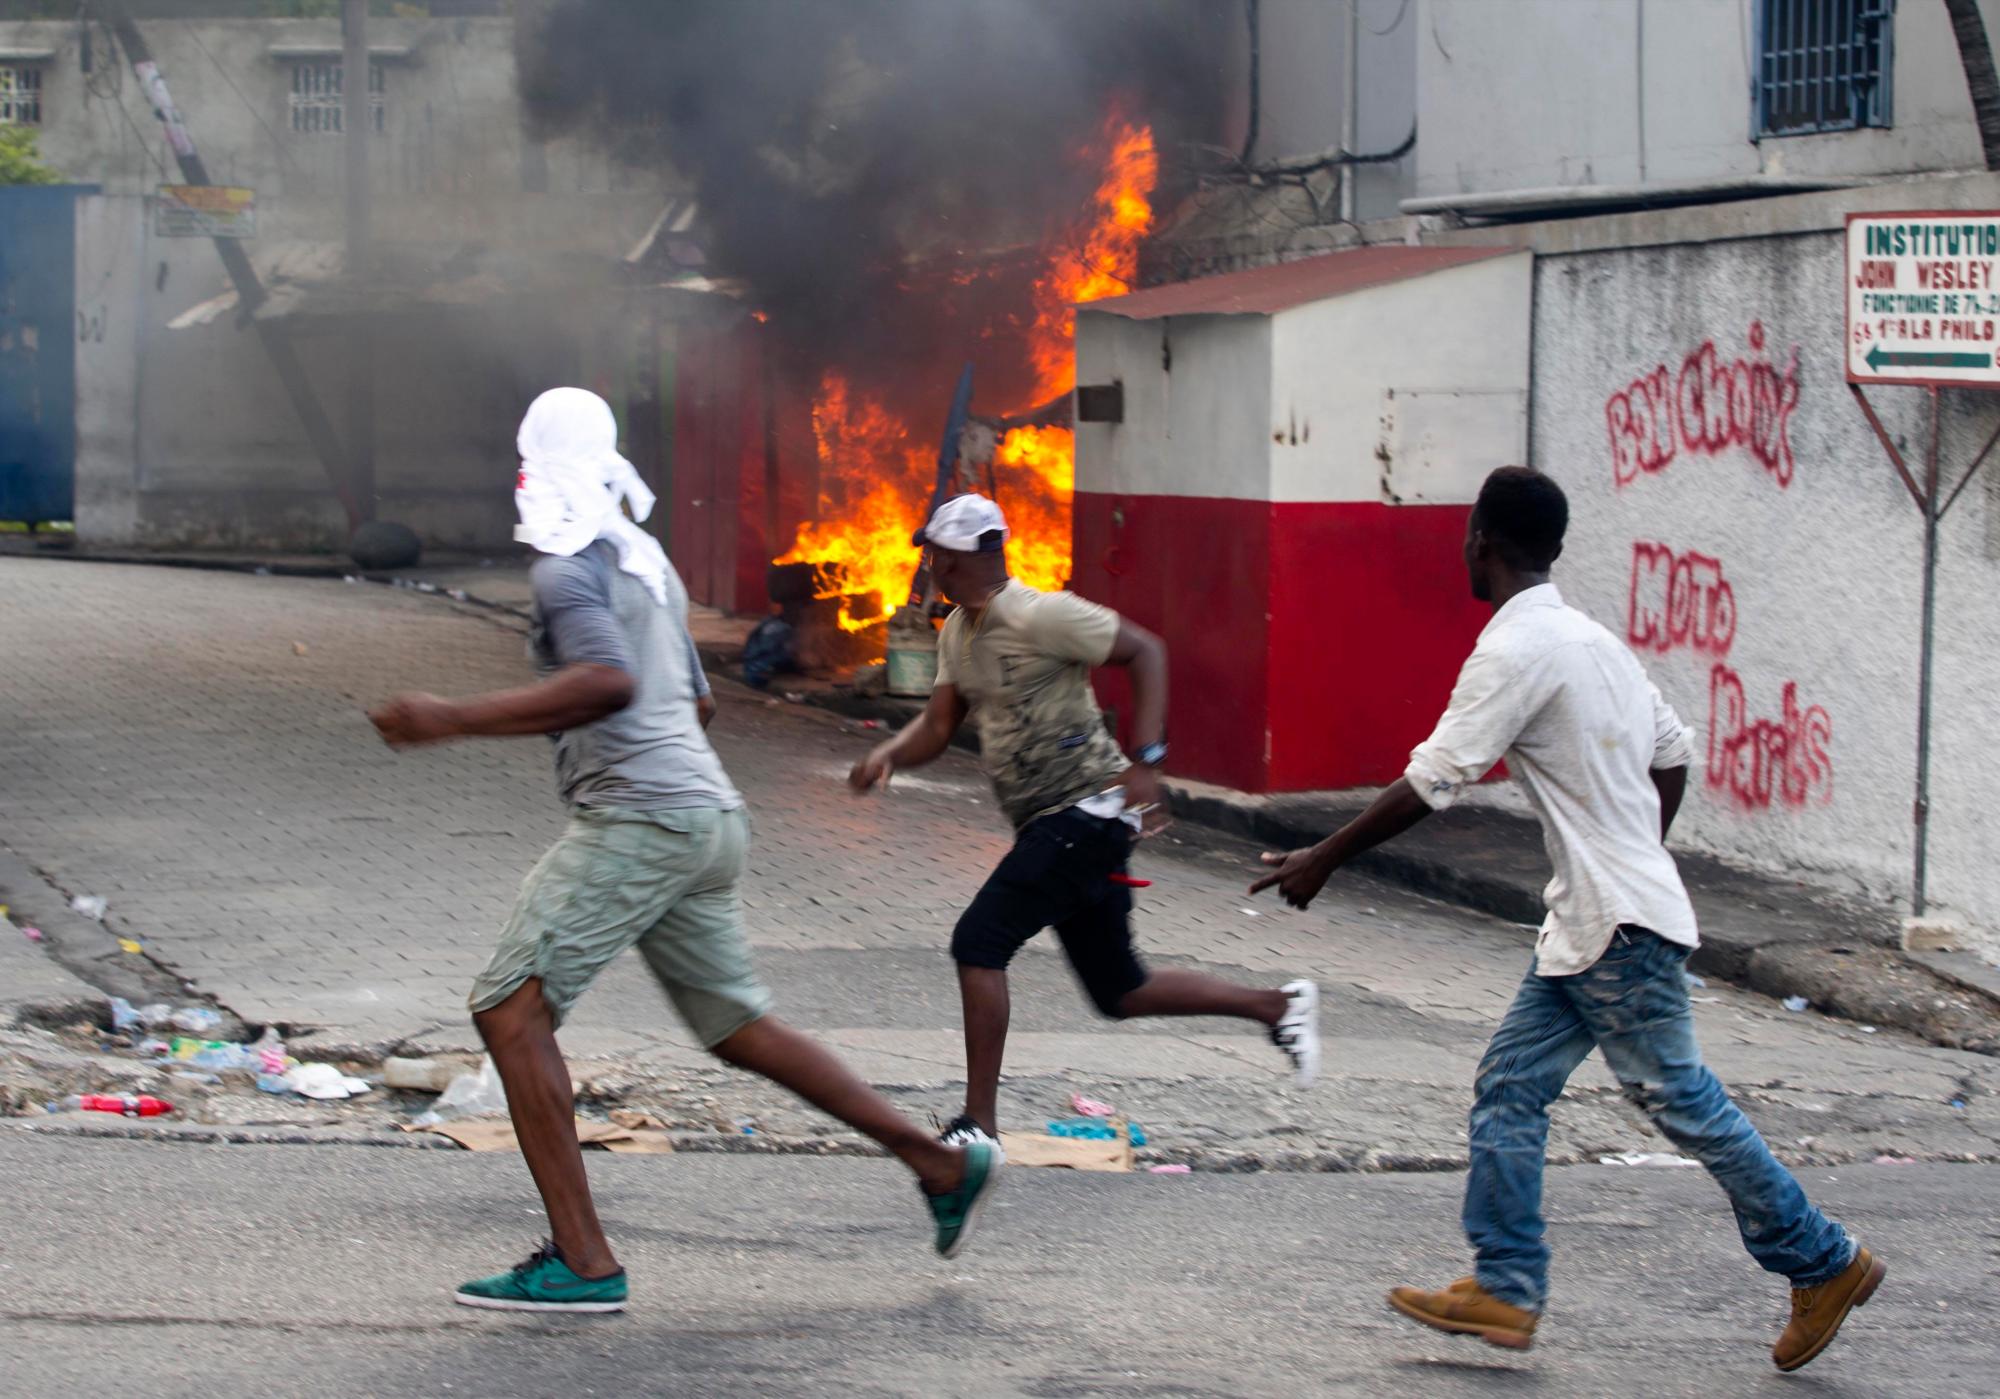 Los manifestantes pasan frente a una estructura incendiada después de que los residentes del vecindario local se enfrentaron con los manifestantes durante una protesta para exigir la renuncia del presidente de Haití, Jovenel Moise, en el 216 aniversario de la Batalla de Vertieres en Puerto Príncipe, Haití, el lunes 18 de noviembre de 2019. Al menos cuatro personas fueron baleadas y heridas durante una pequeña protesta en la capital de Haití después de un discurso del presidente Moise. Un periodista local, un oficial de policía y dos manifestantes fueron trasladados rápidamente con heridas de bala aparentes. 